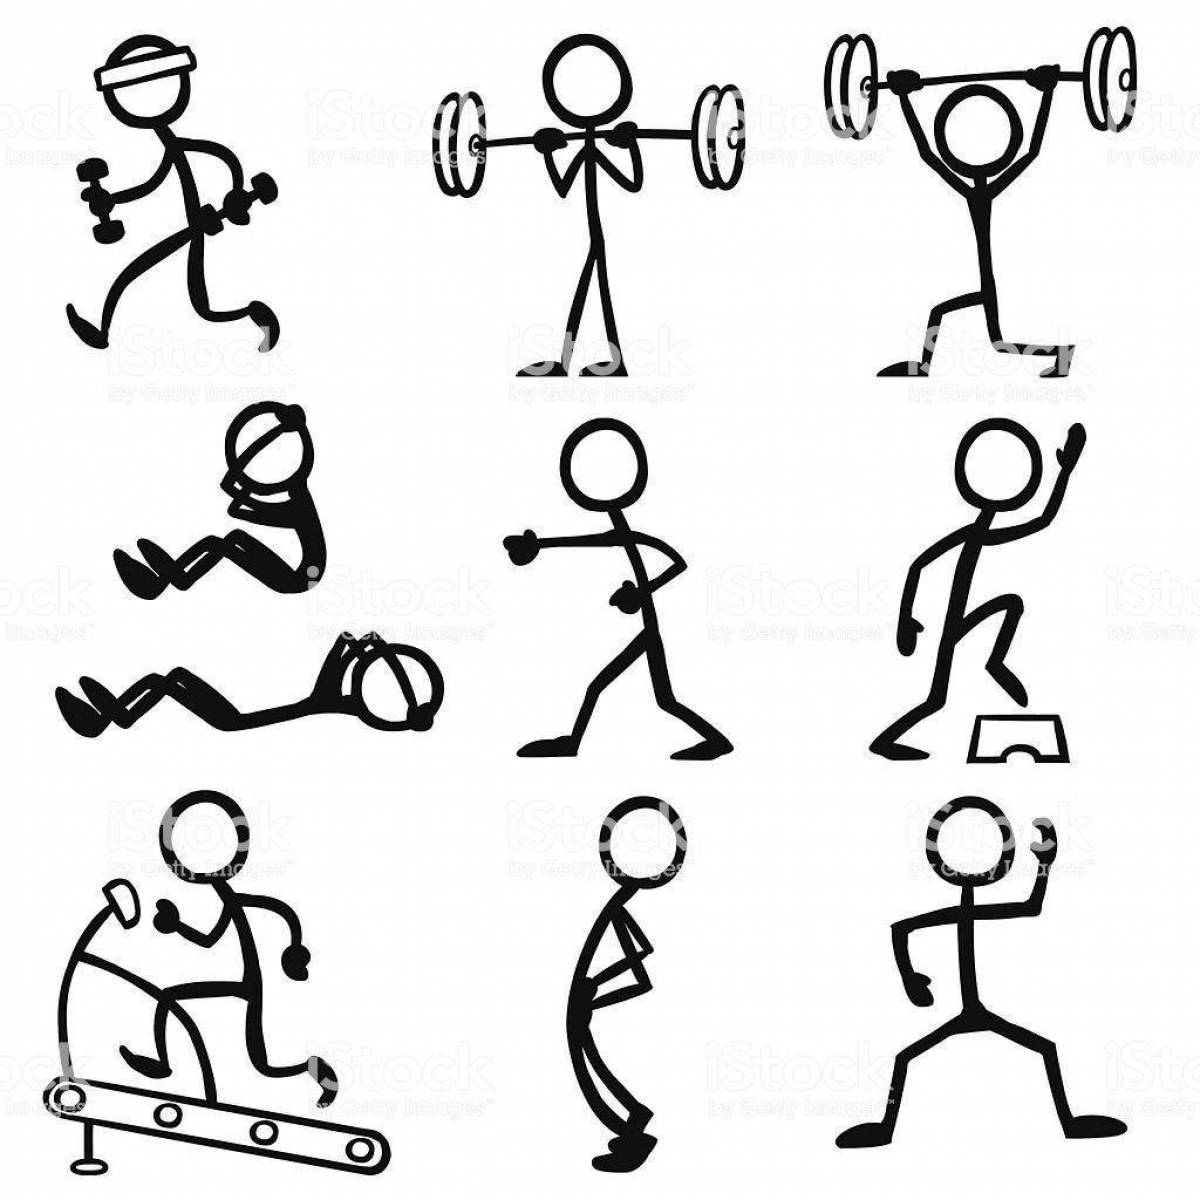 Движение стике. Рисование человечков в разных спортивных позах. Человечек рисунок. Человечки схематично в движении. Фигура человечка.